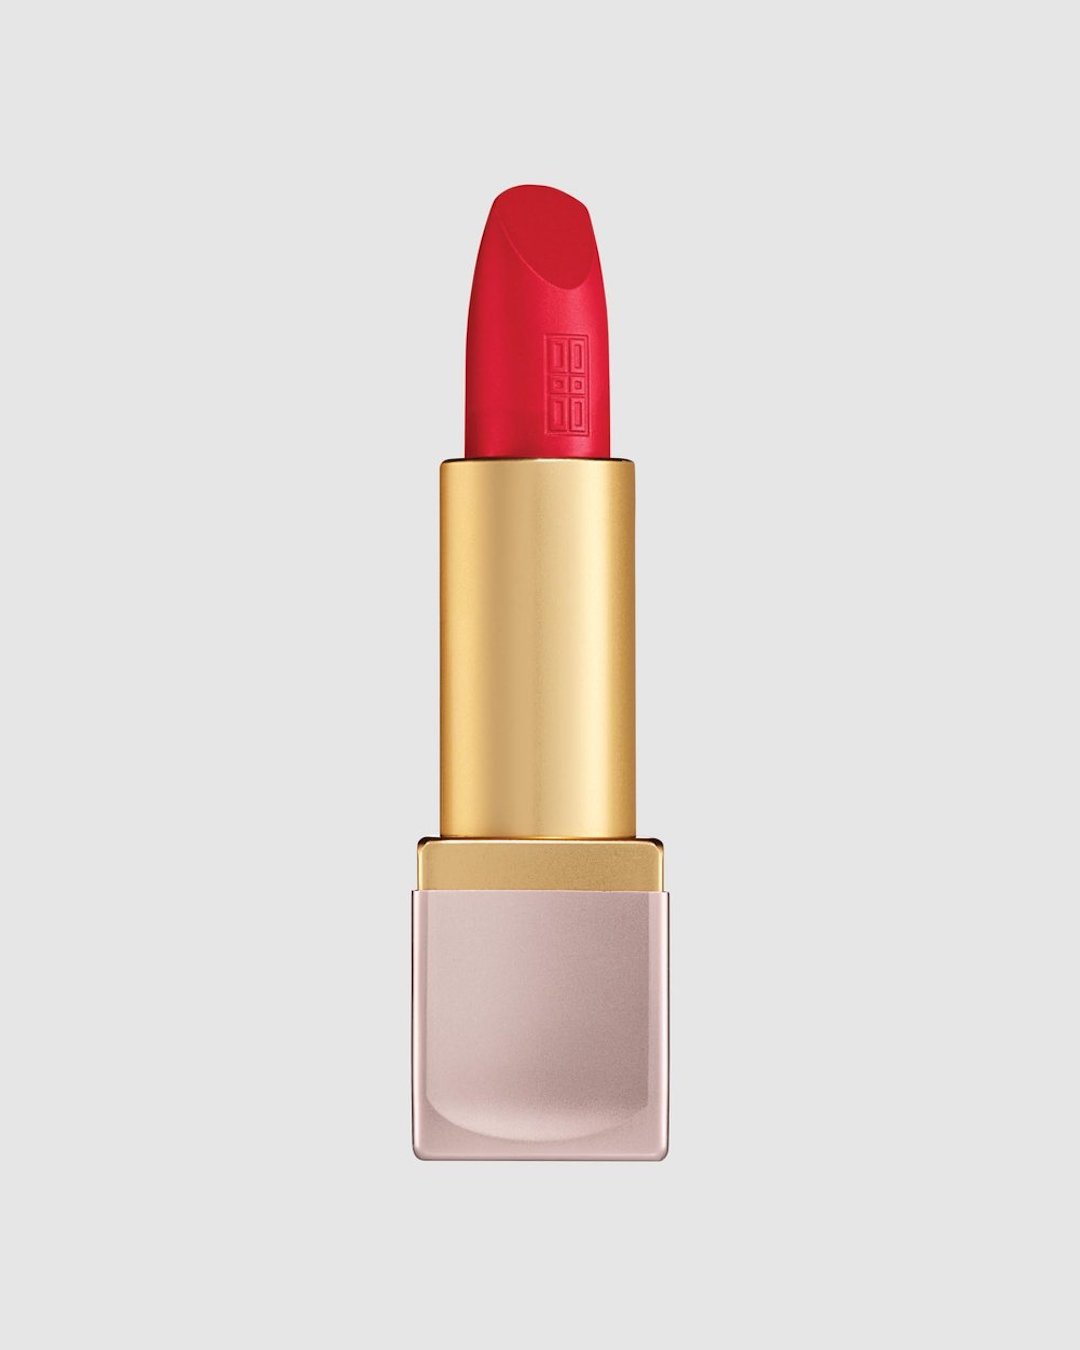 Elizabeth Arden red lipstick